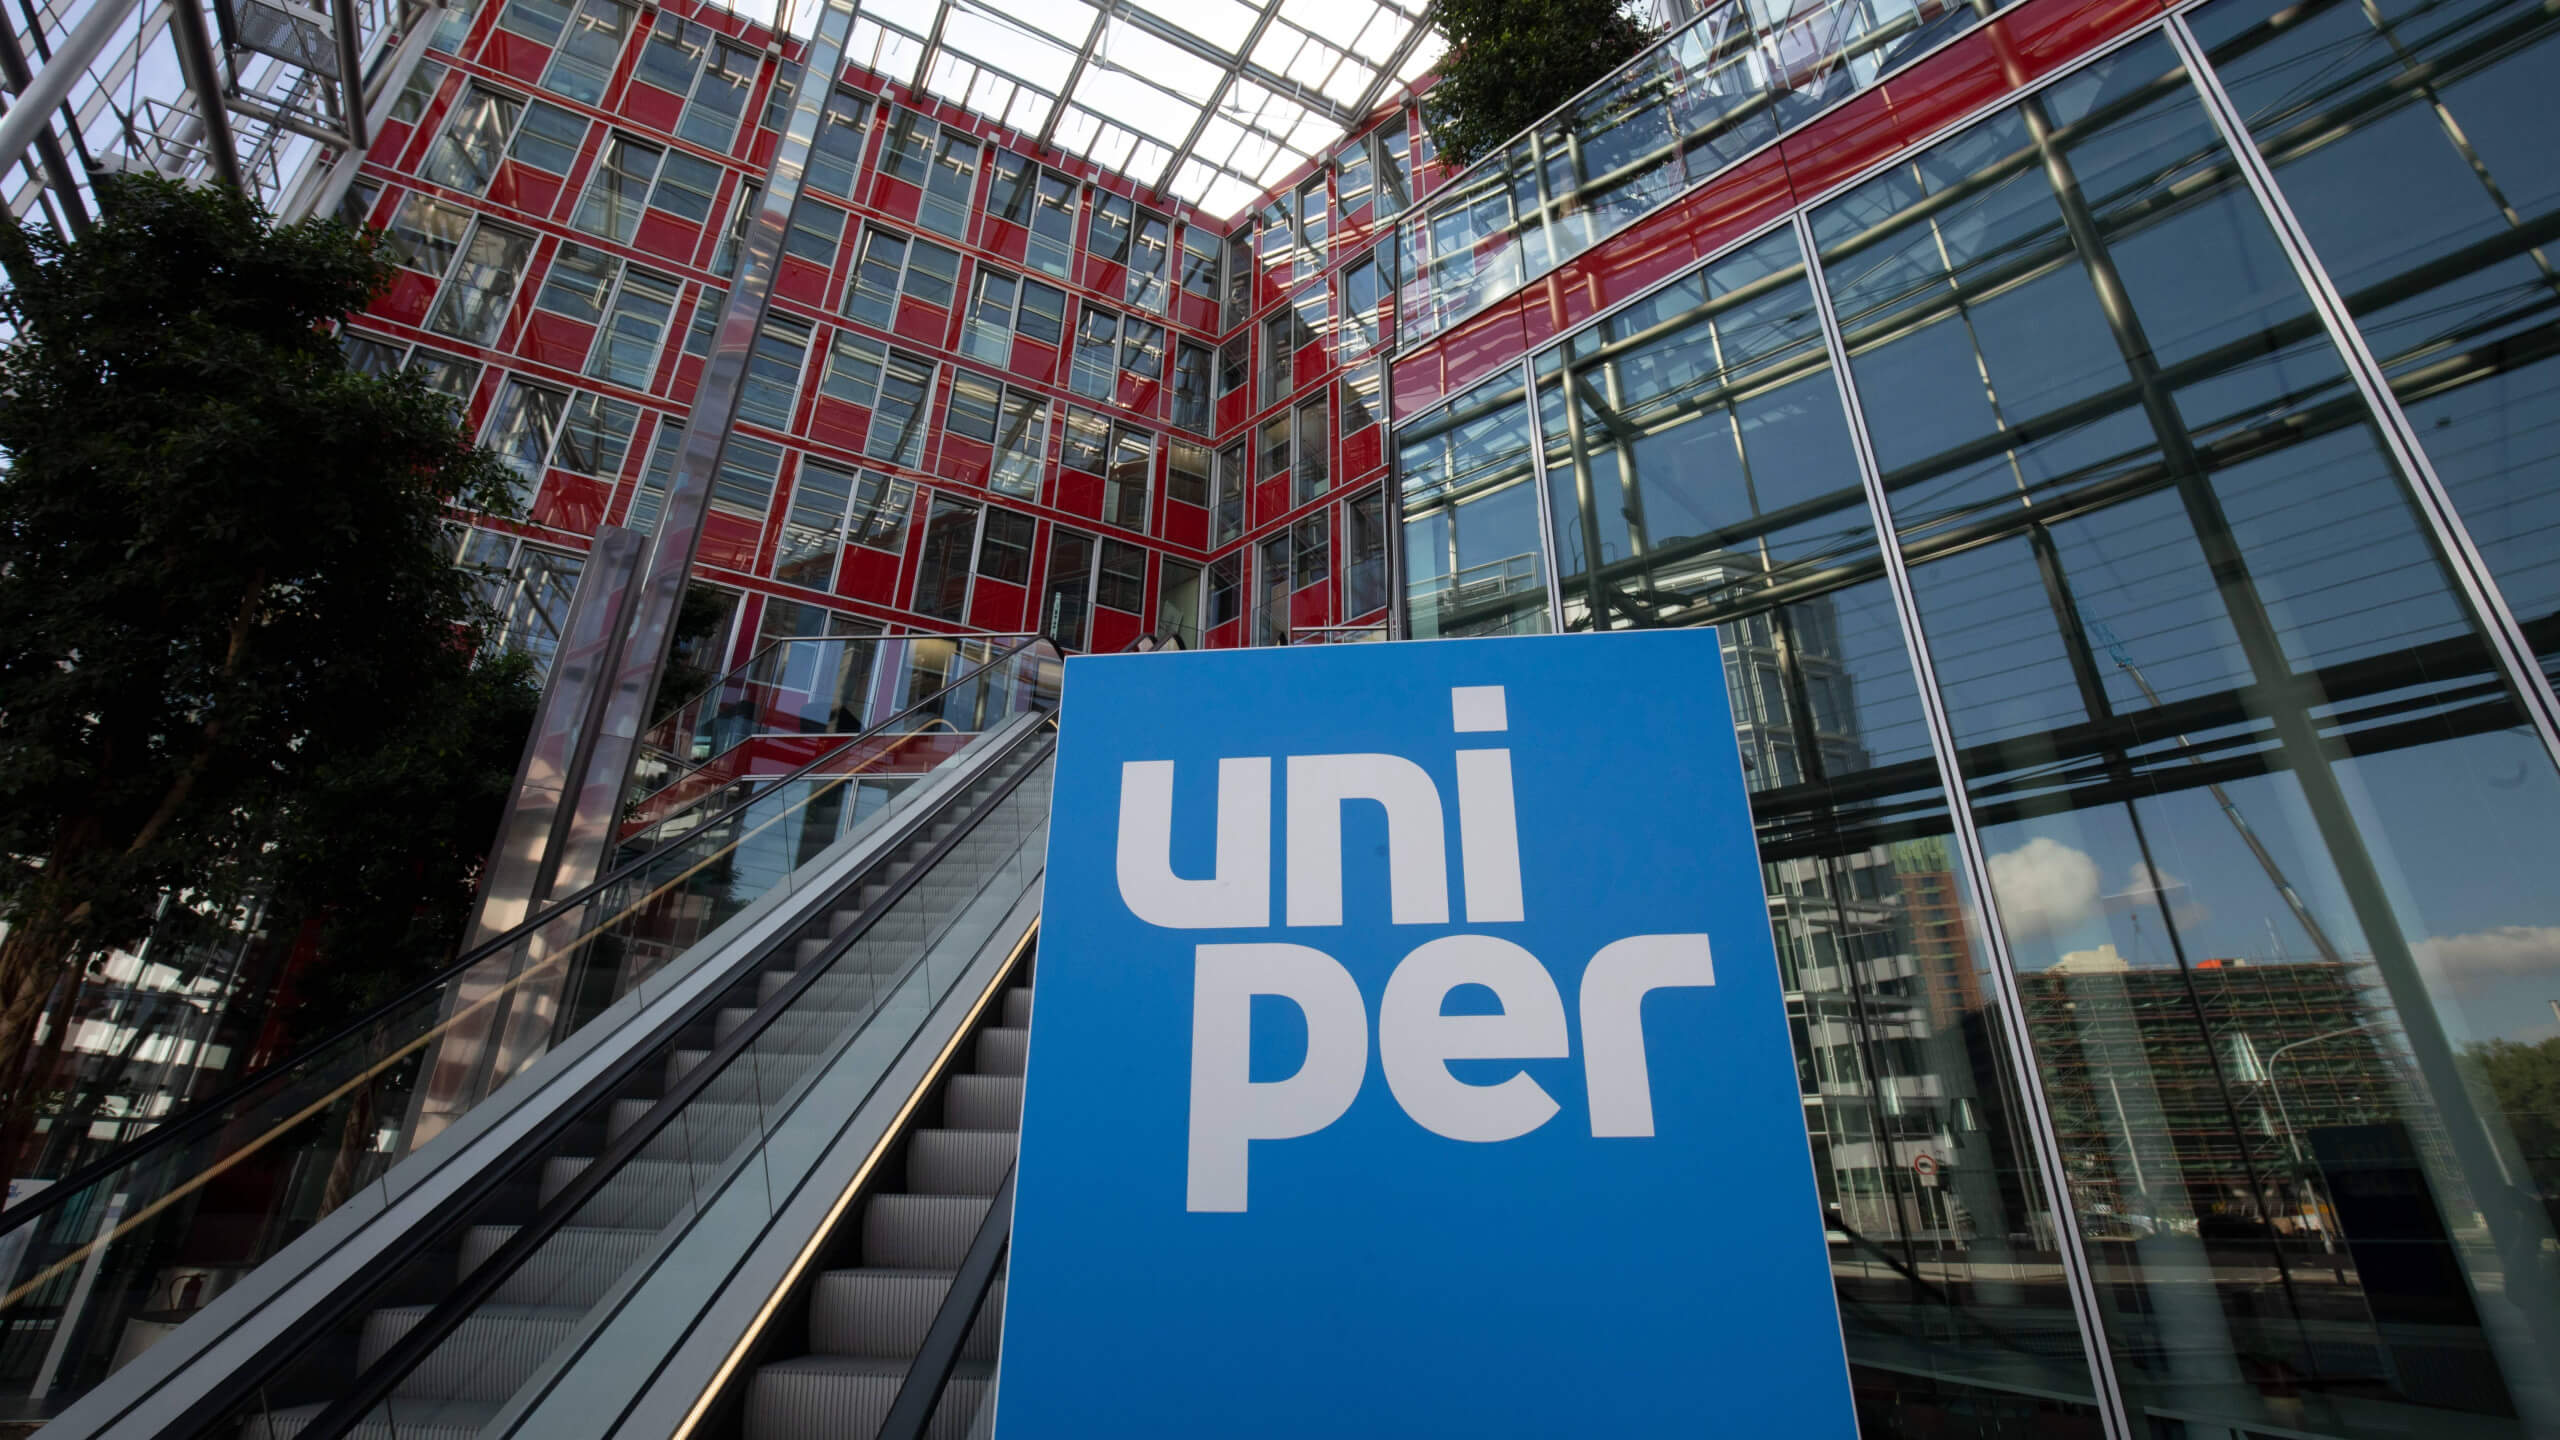 Firmensitz von Uniper – die Finanzchefin Jutta Dönges ist nicht mit Patrick Graichen verheiratet